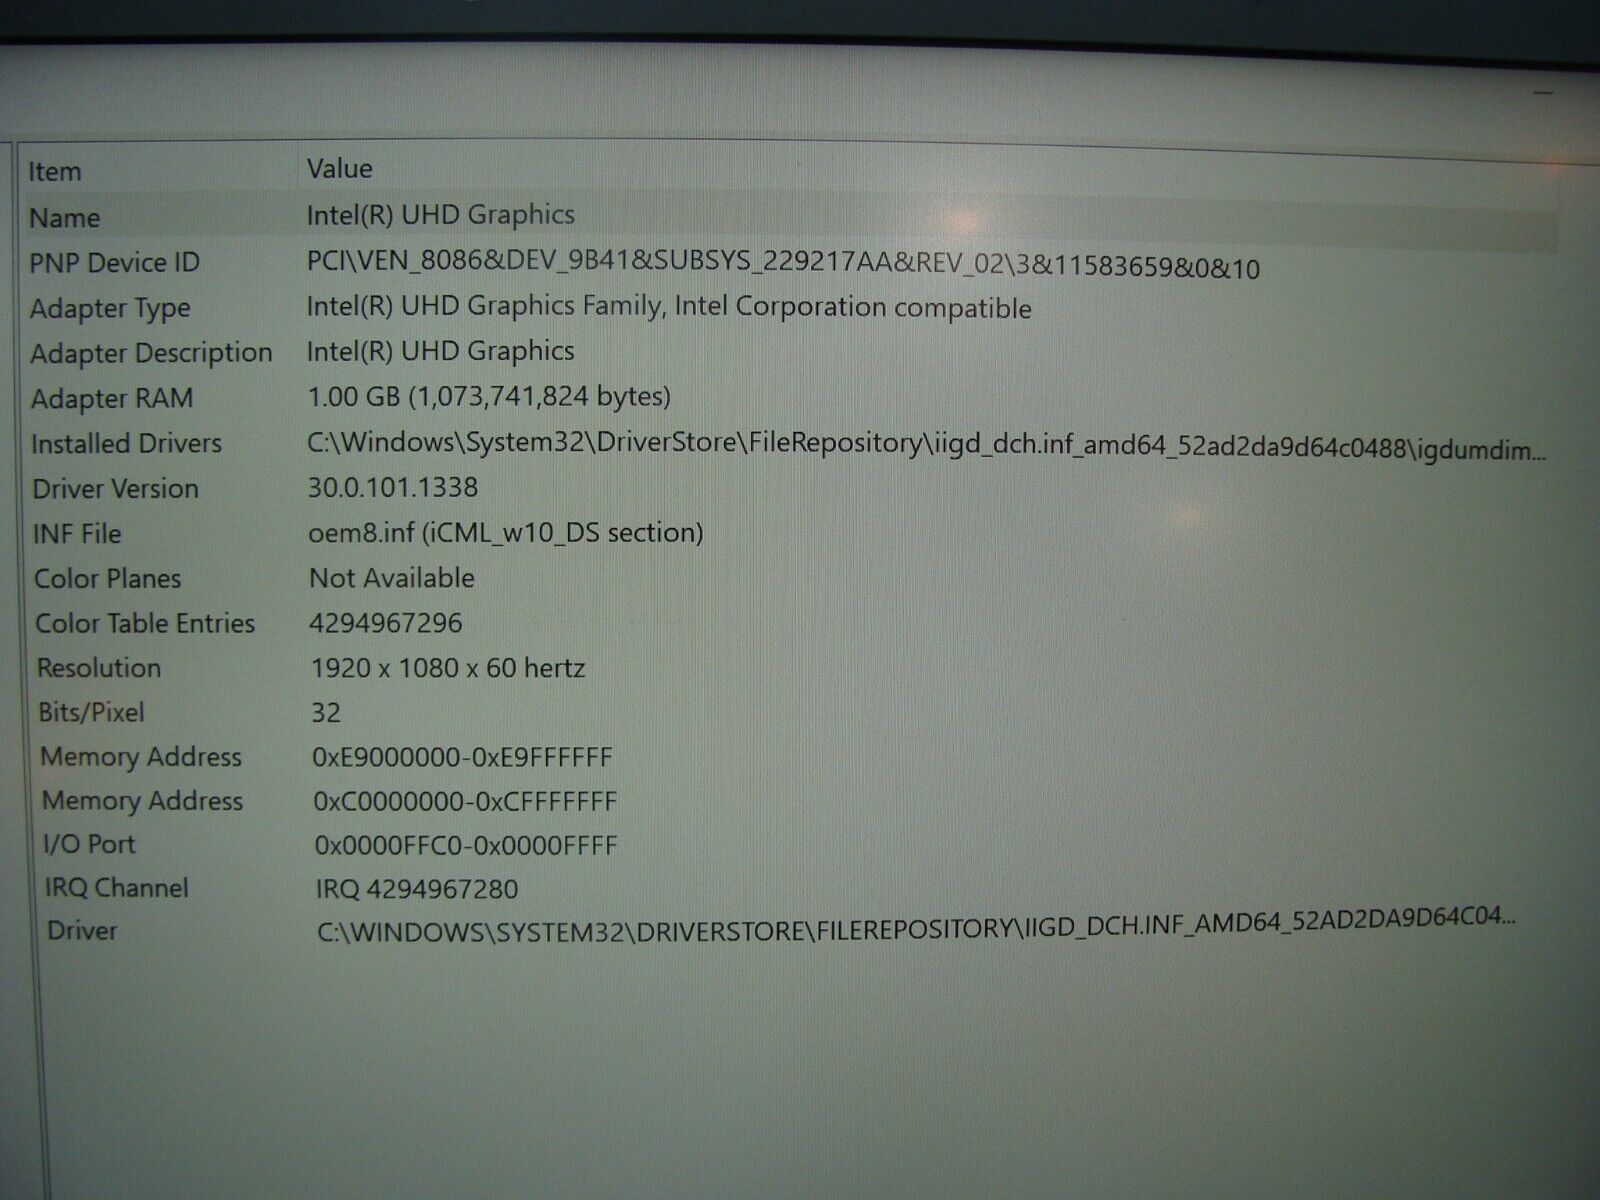 Lenovo ThinkPad X1 Carbon 7th Gen TOUCH i7-10510U 1.8GHz 16GB 512GB 100%Battery